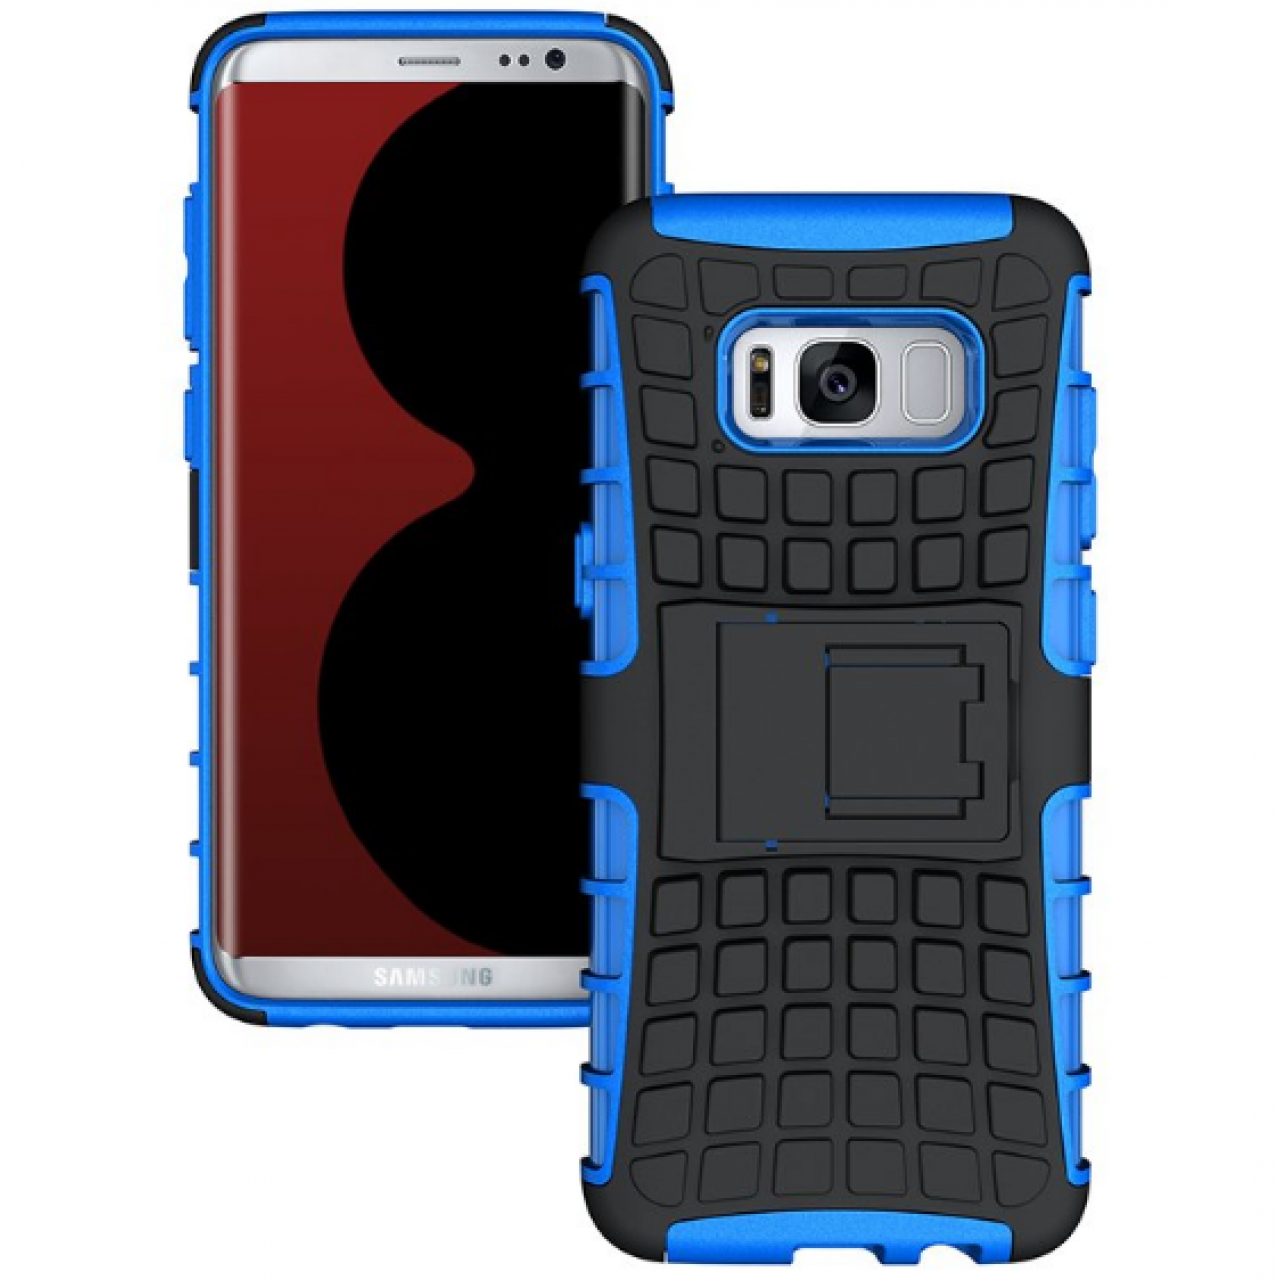 Θήκη Samsung Galaxy (G955) S8 Plus Armor Σιλικόνης TPU με Επένδυση Σκληρή Πλαστική PC Καουτσούκ και σταντ οριζόντιας στήριξης - 3911 - Μπλε - OEM